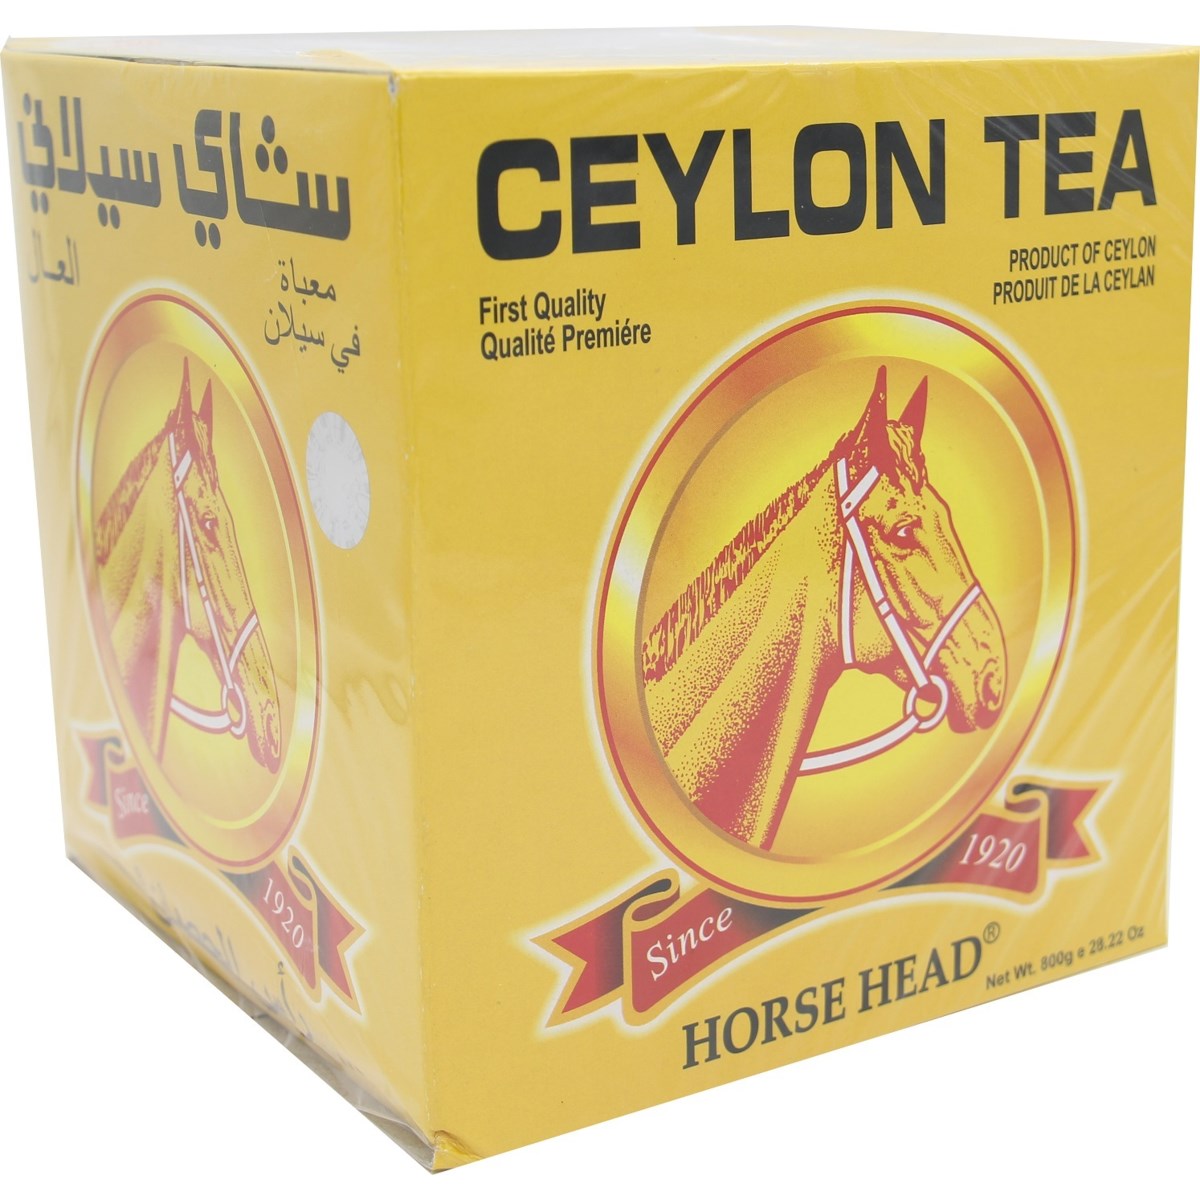 Horse Head Tea 800g x 12